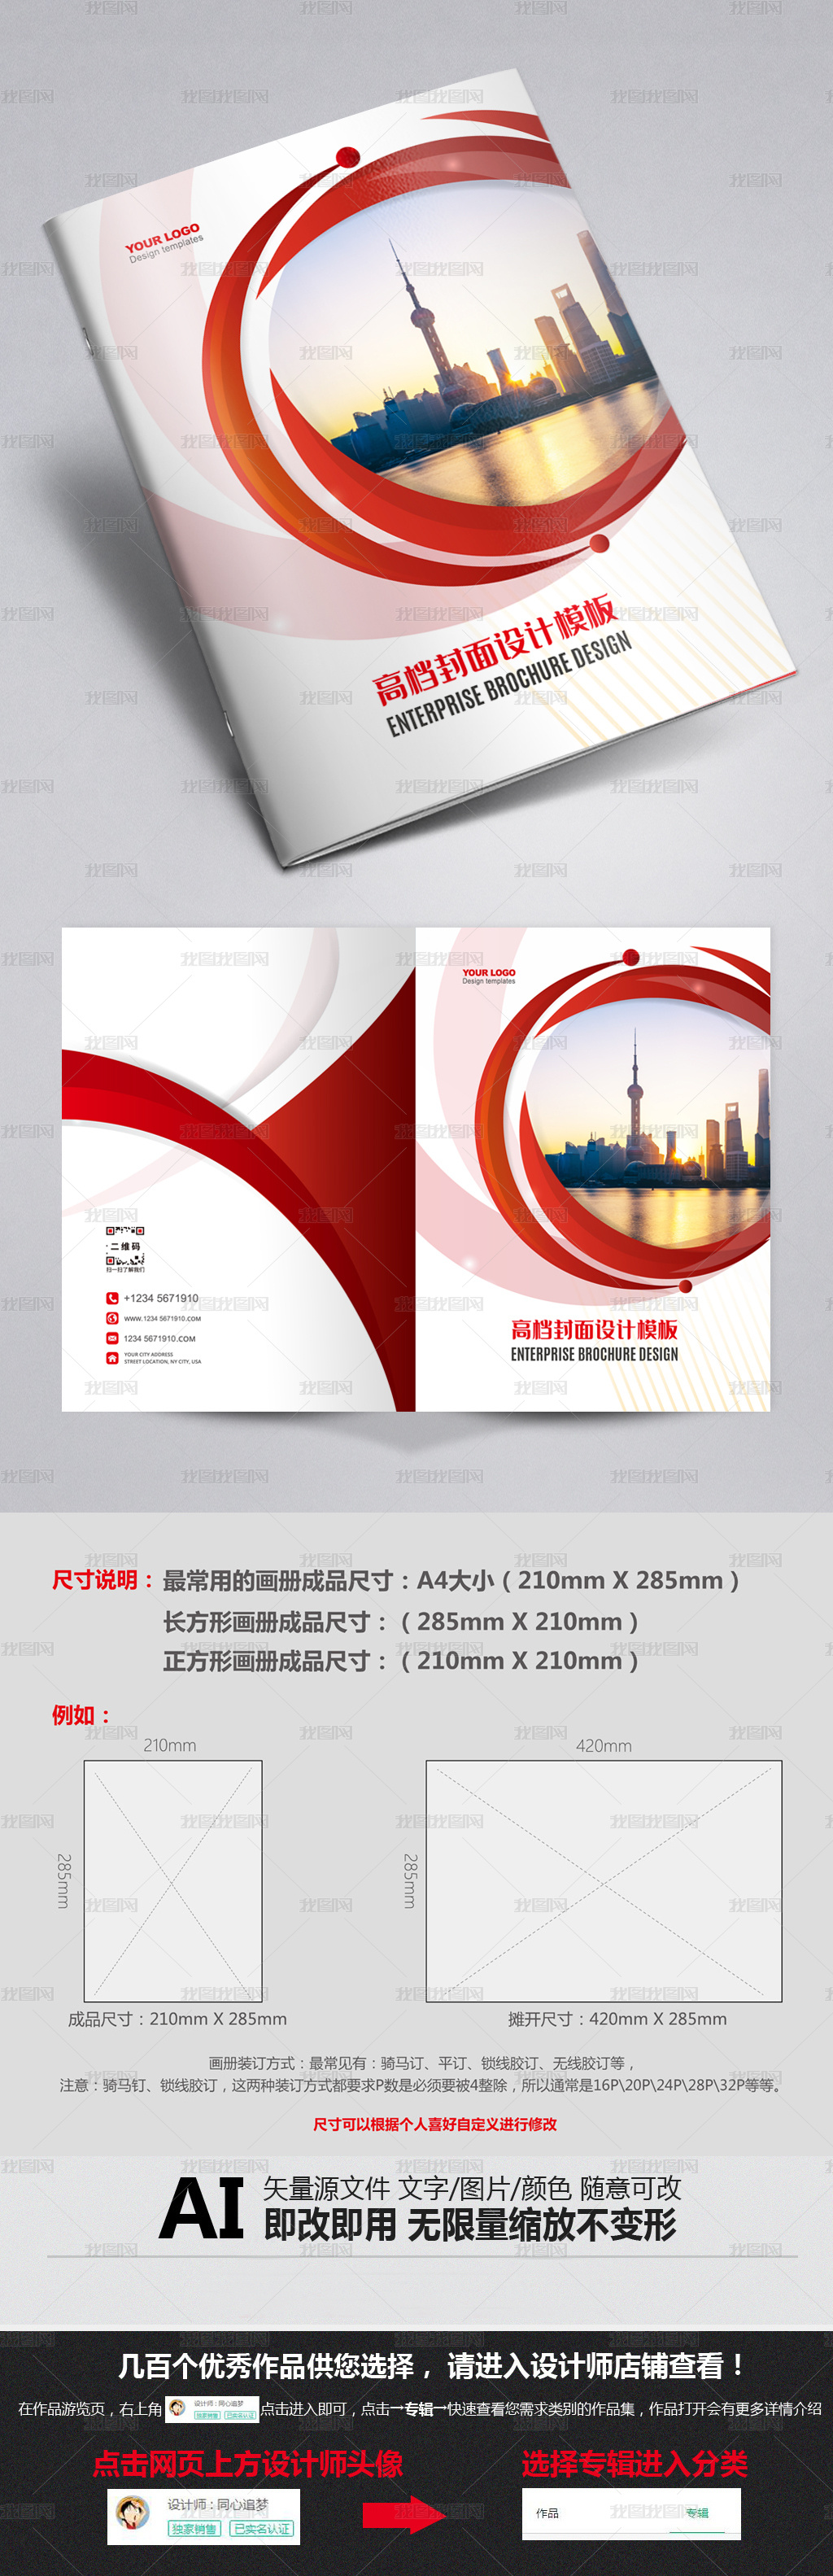 红色画册封面标书教材封面企业文化宣传册设计